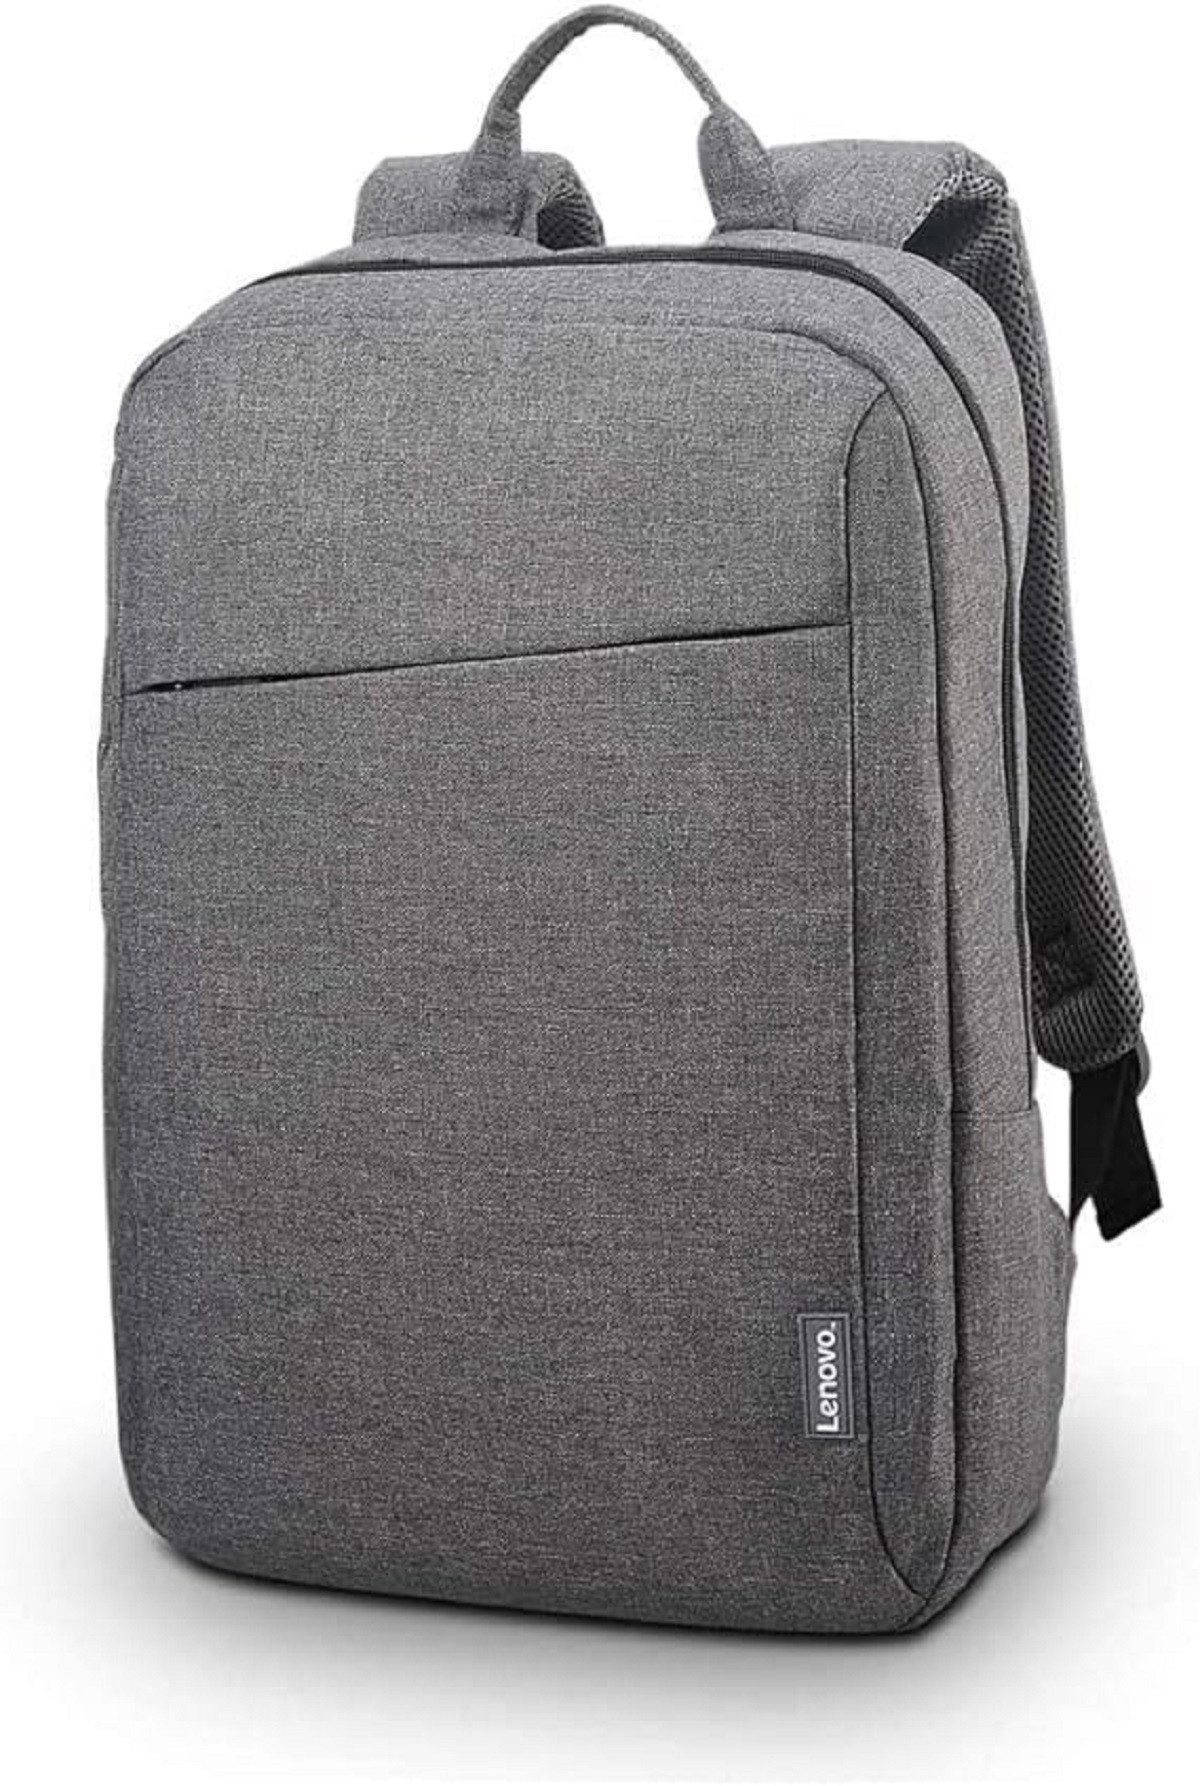 Lenovo Laptoptasche Laptop-Tragetasche Rucksack aus Wasserabweisendes Polyester Grau